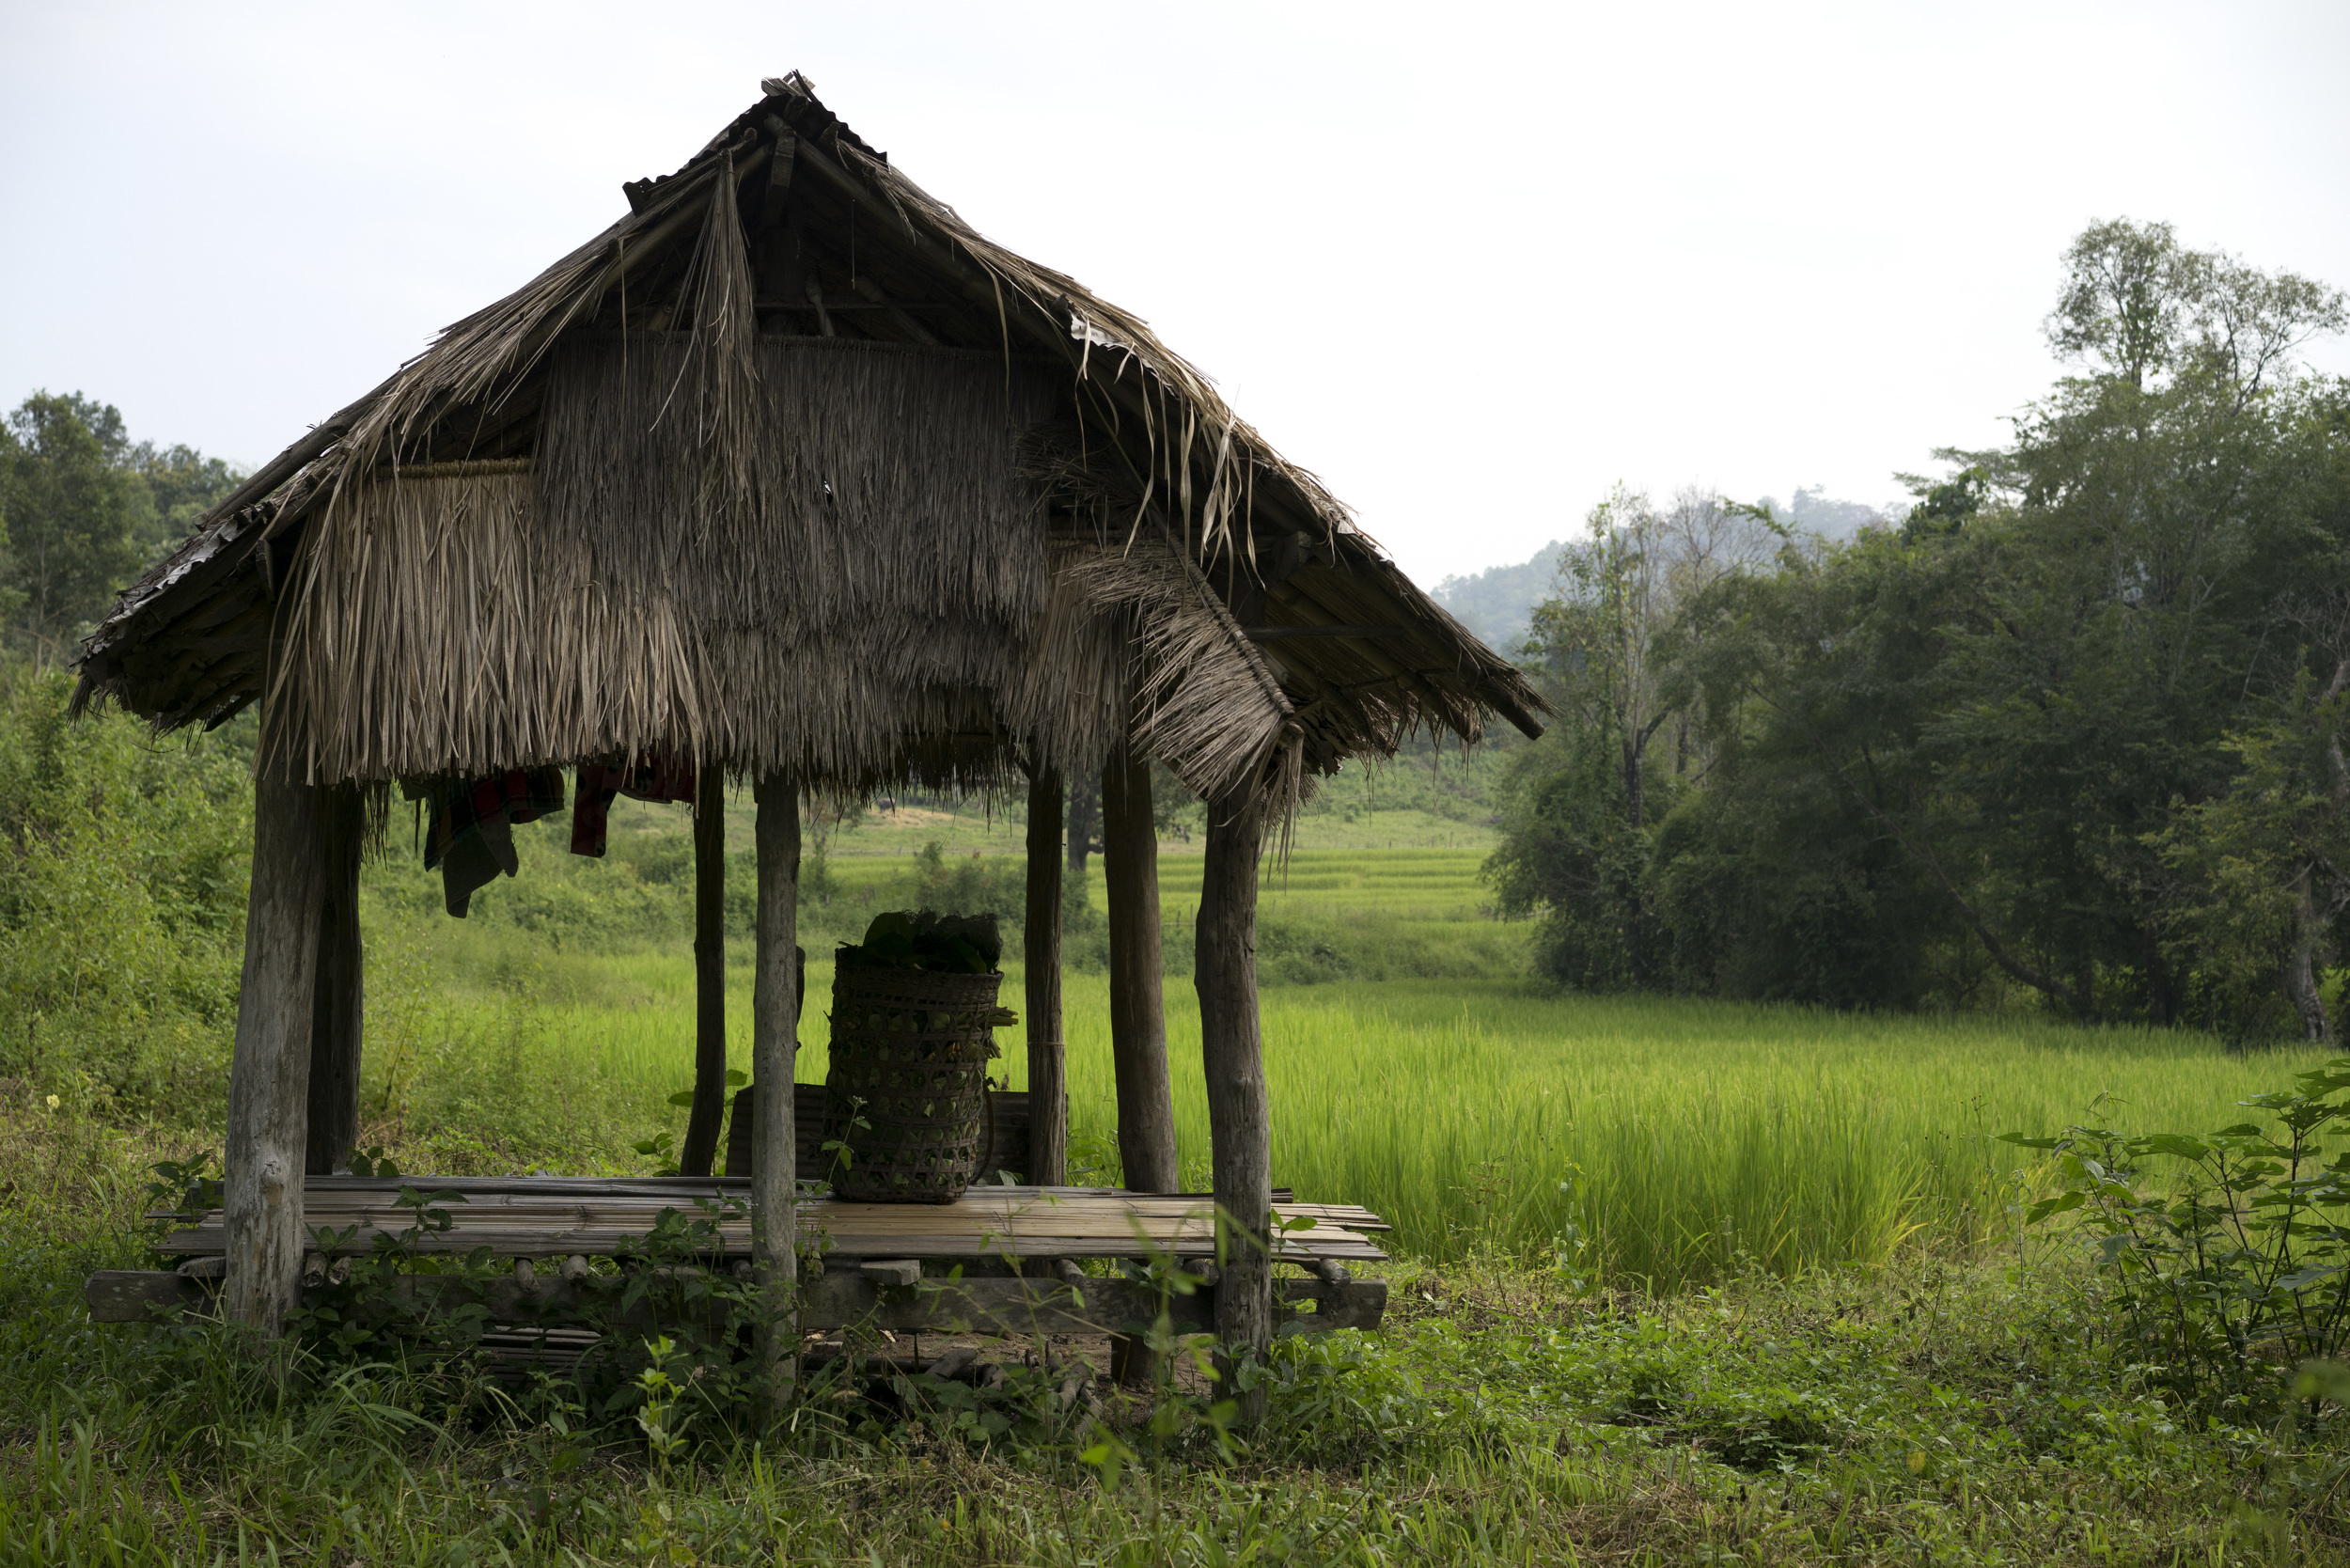 Hut in a Rice Field